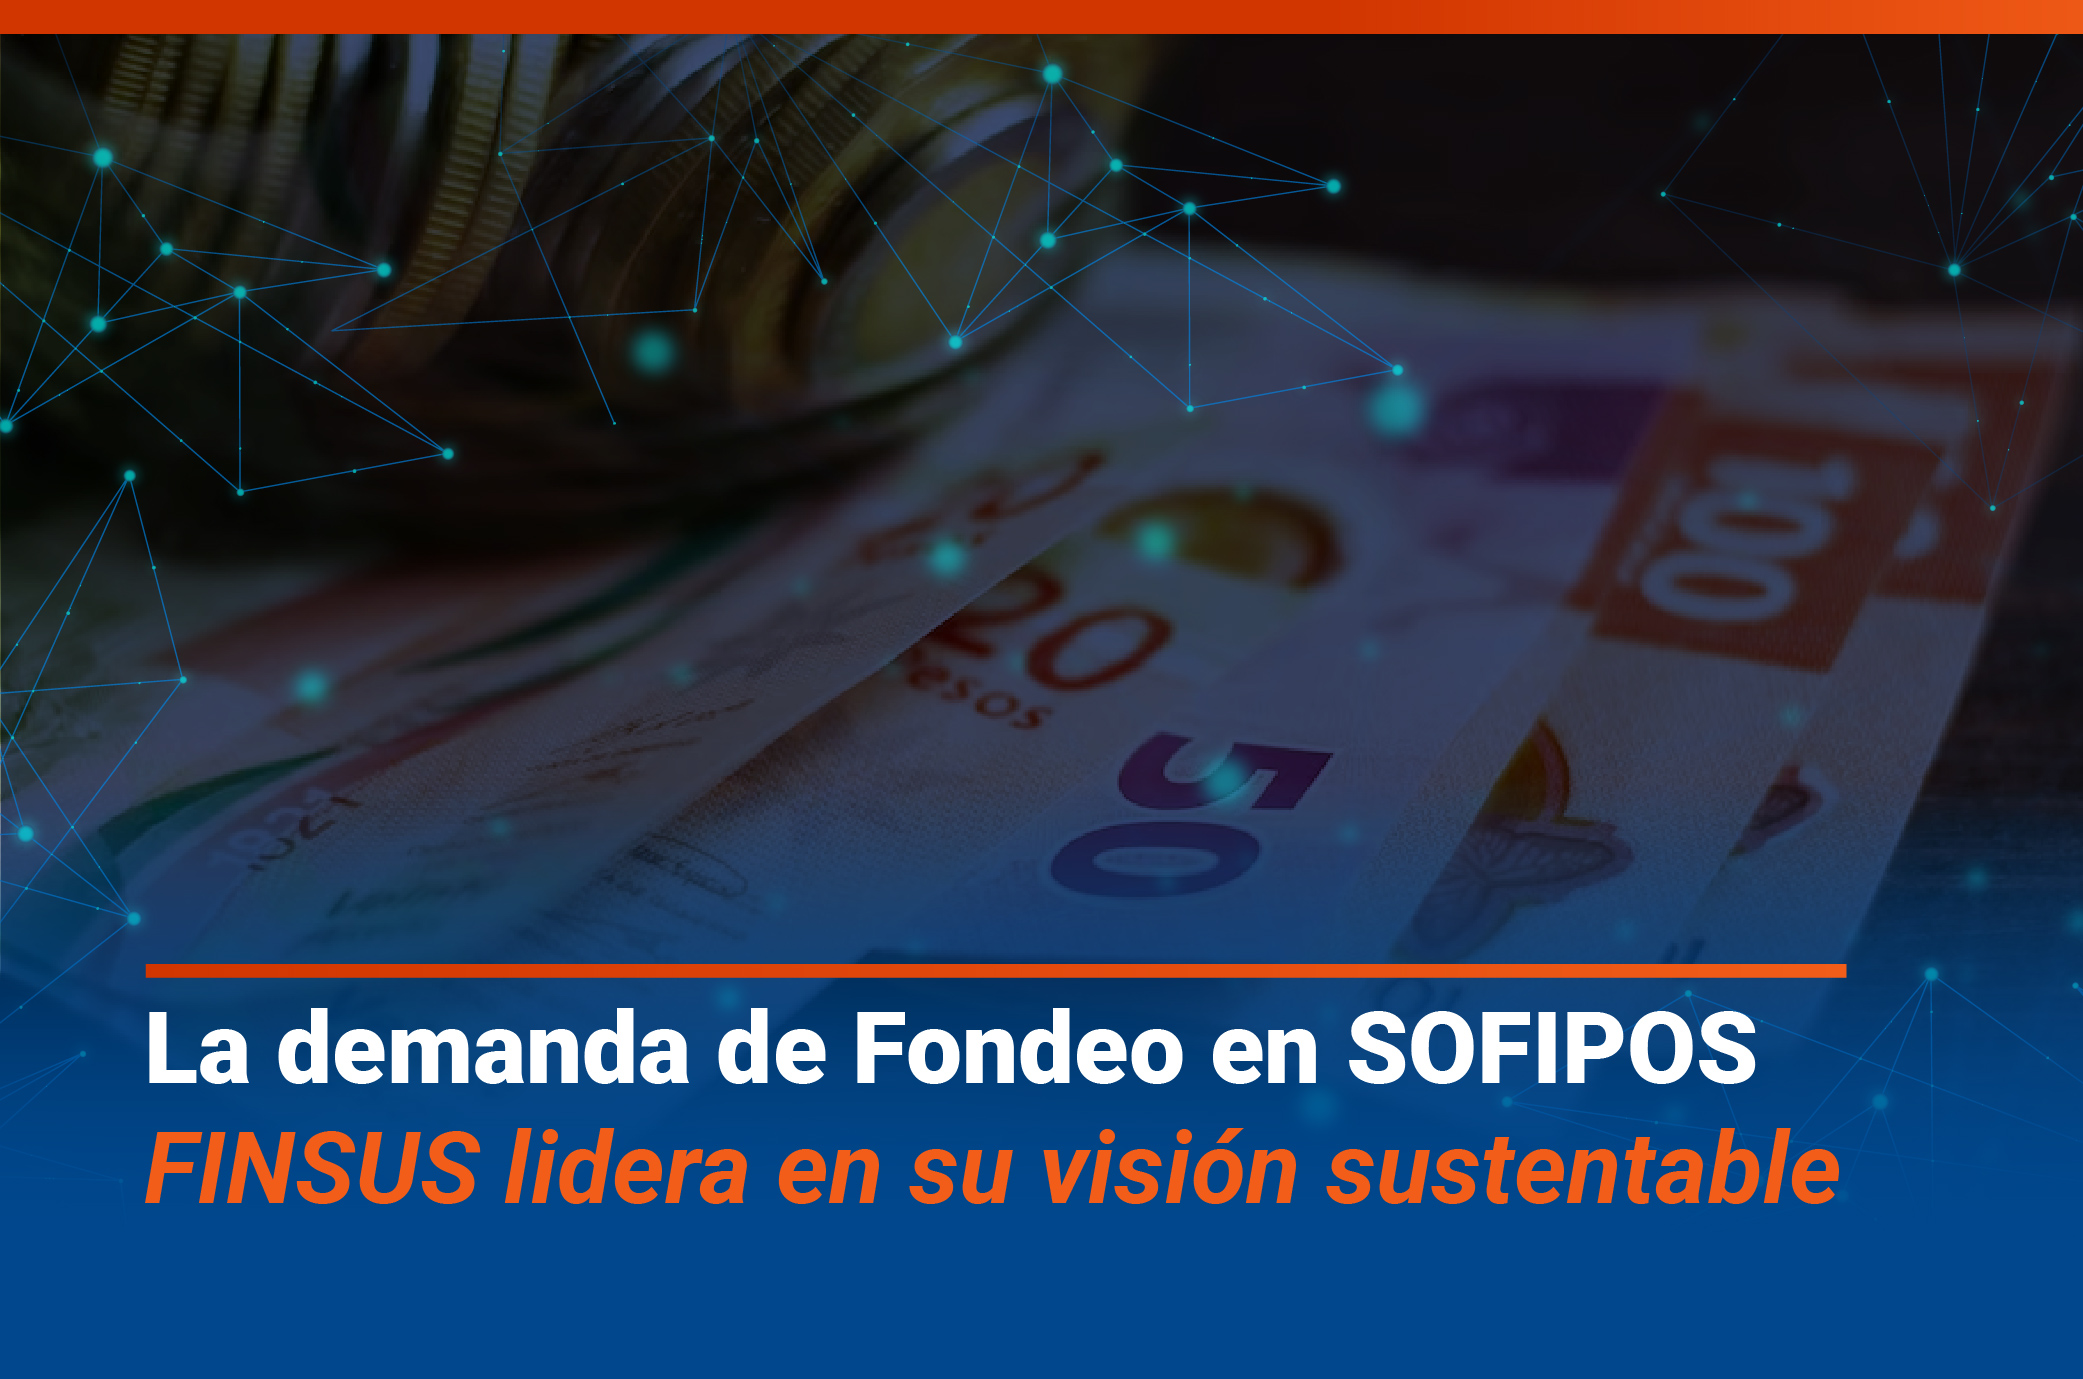 Demanda de fondeo en SOFIPOS: FINSUS lidera con su visión sustentable